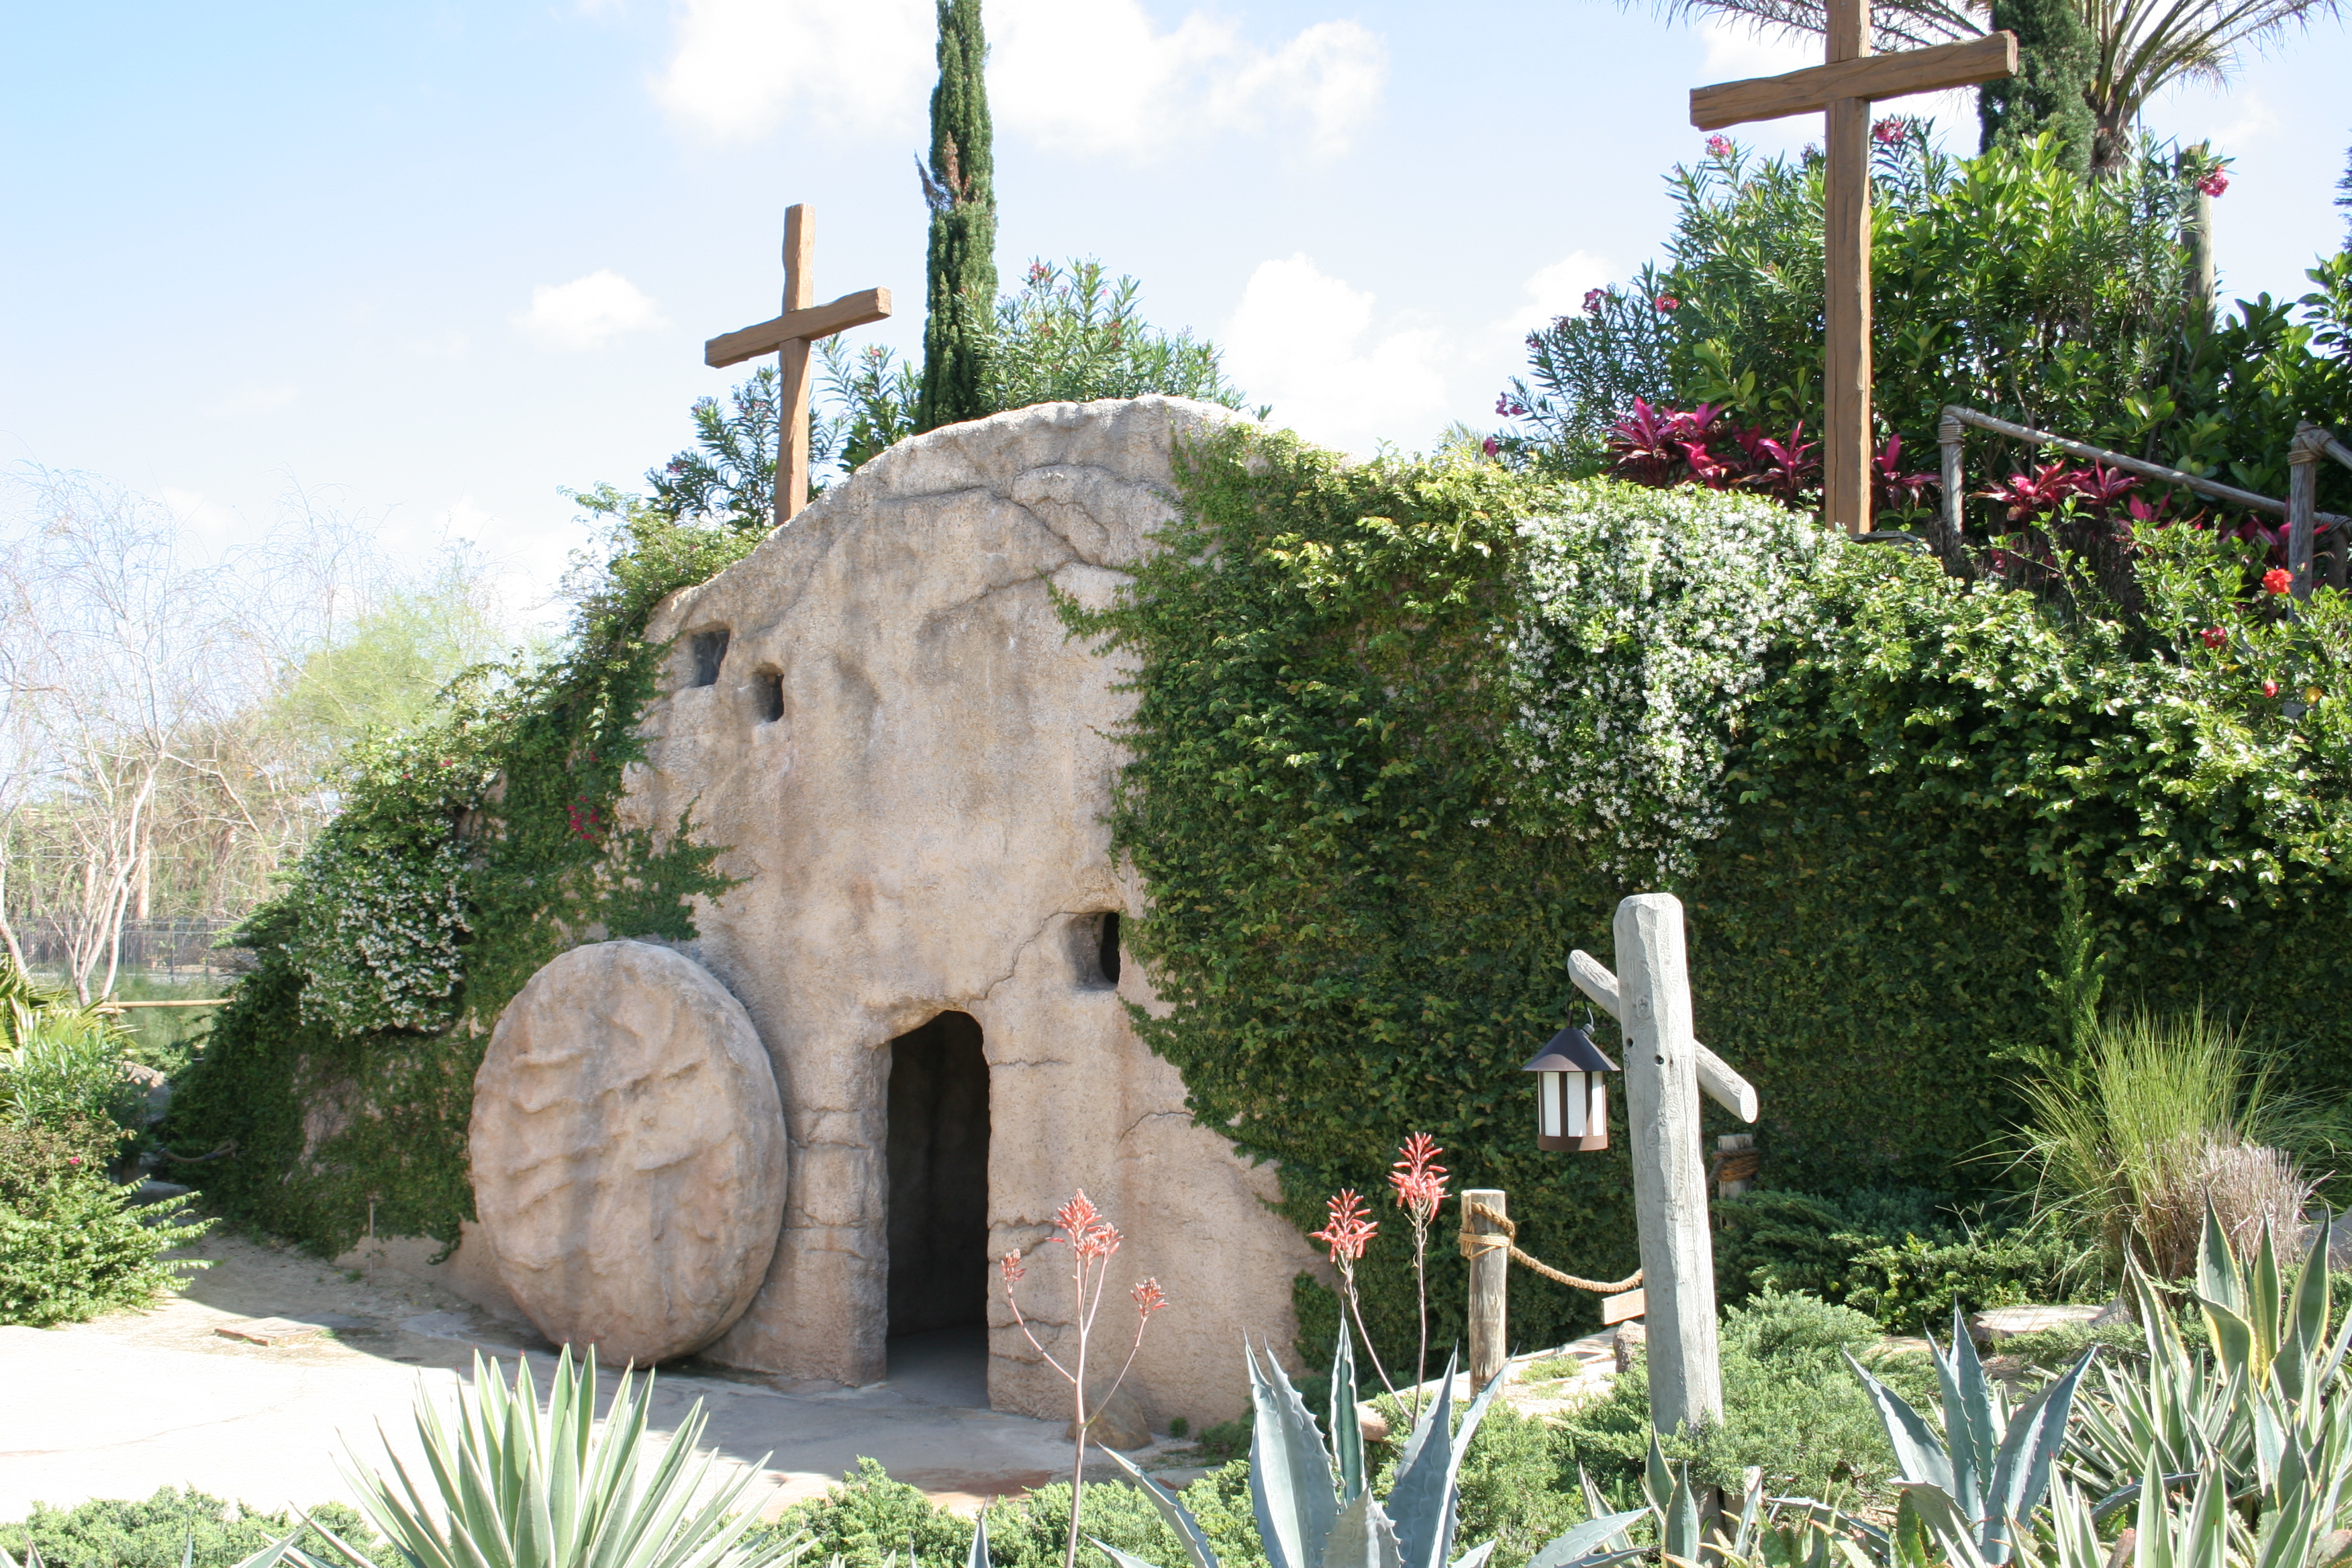 Holy Land Experience A Faith Based Theme Park In Orlando Florida